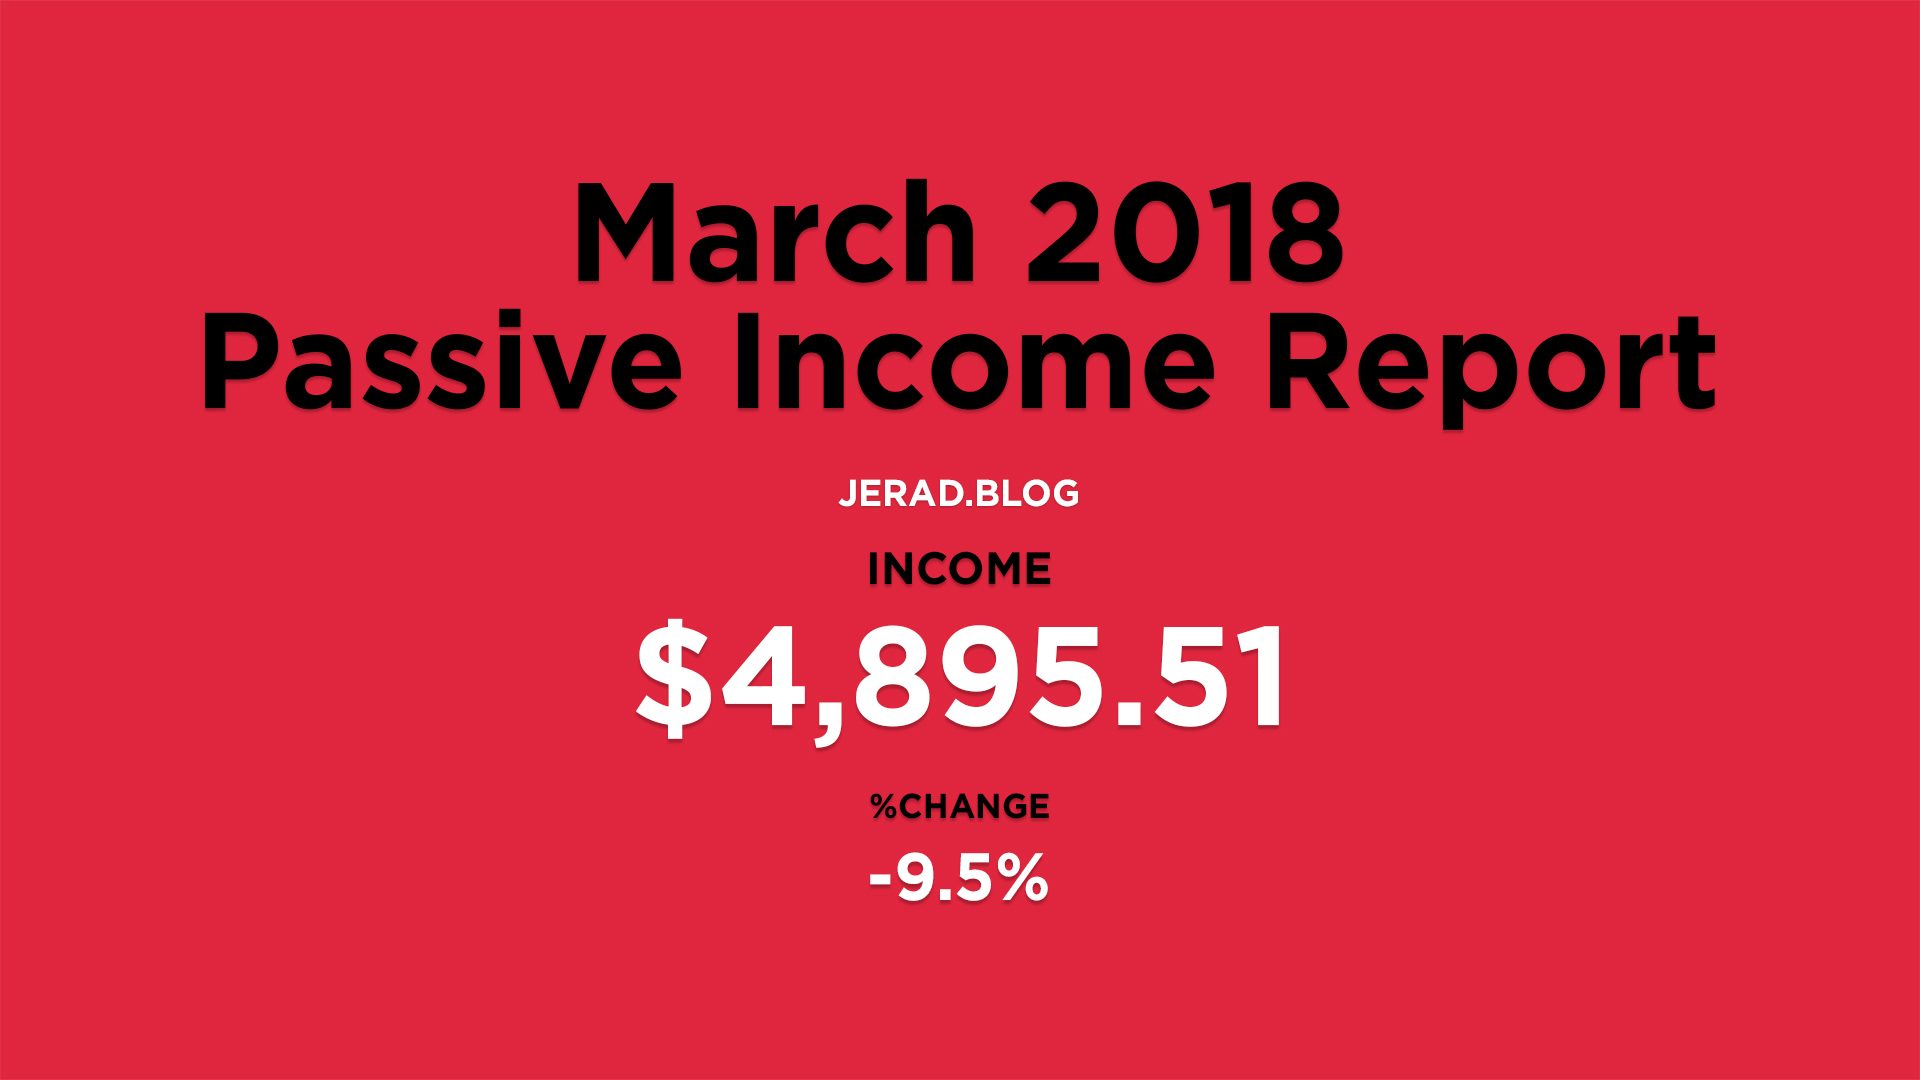 March 2018 Passive Income Report